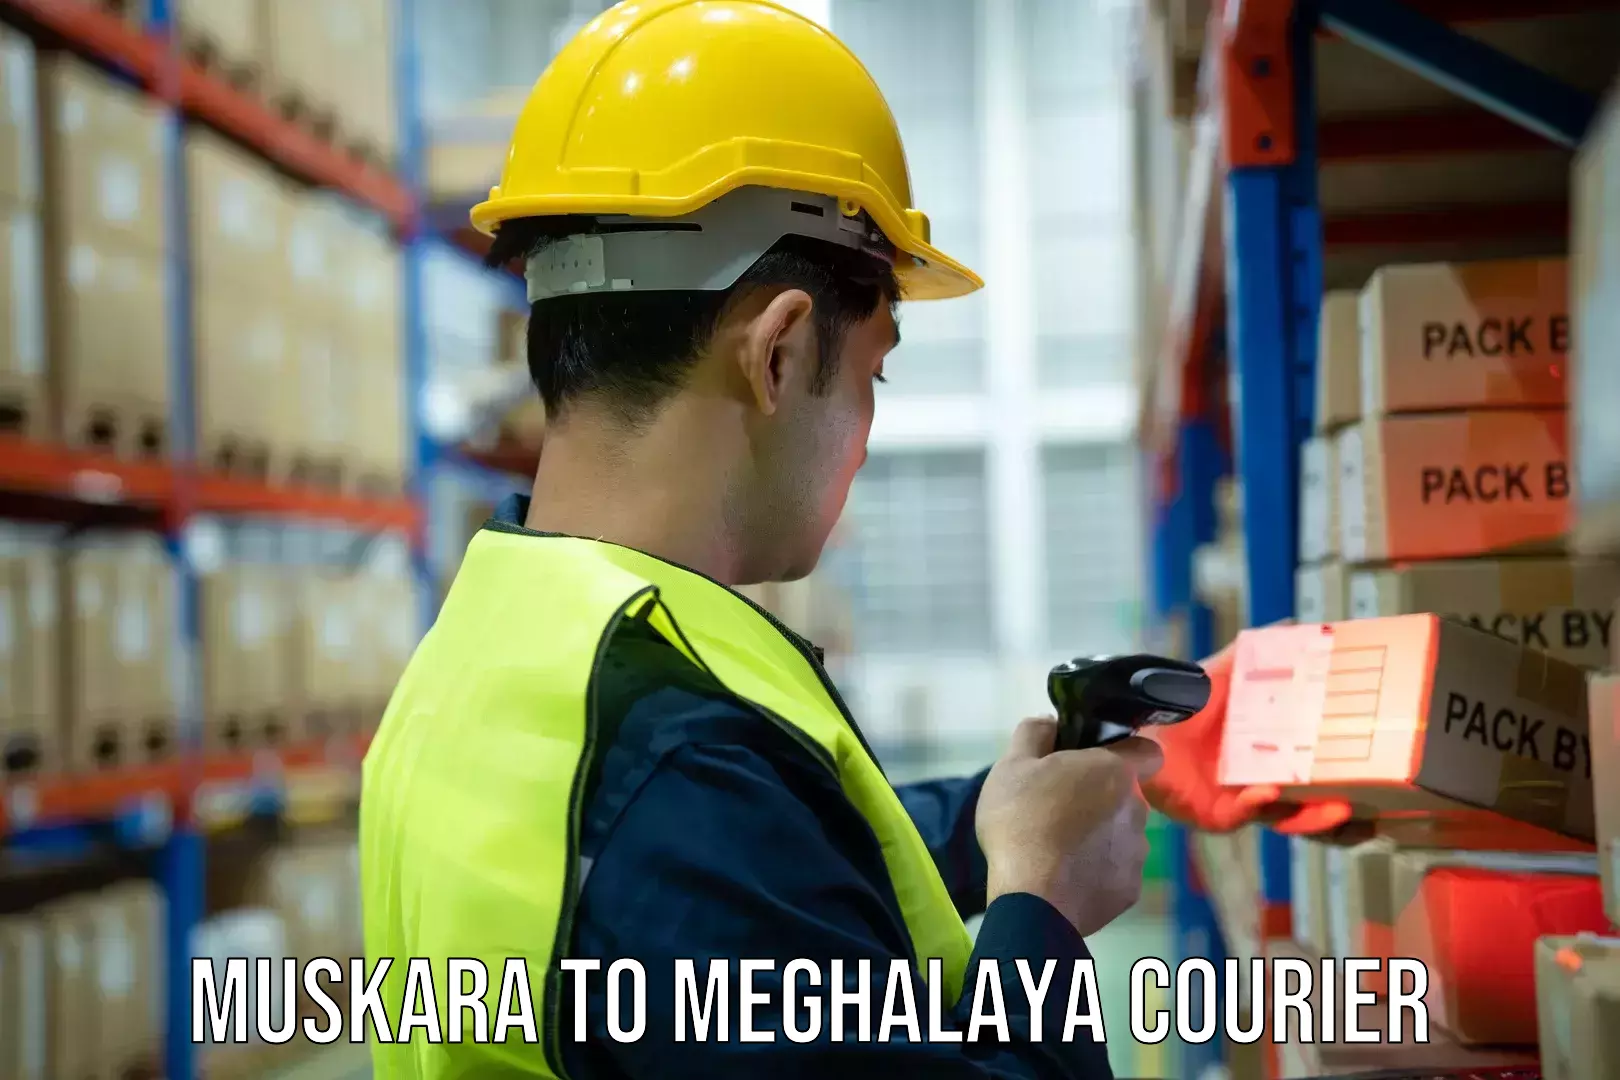 Customer-centric shipping Muskara to Meghalaya